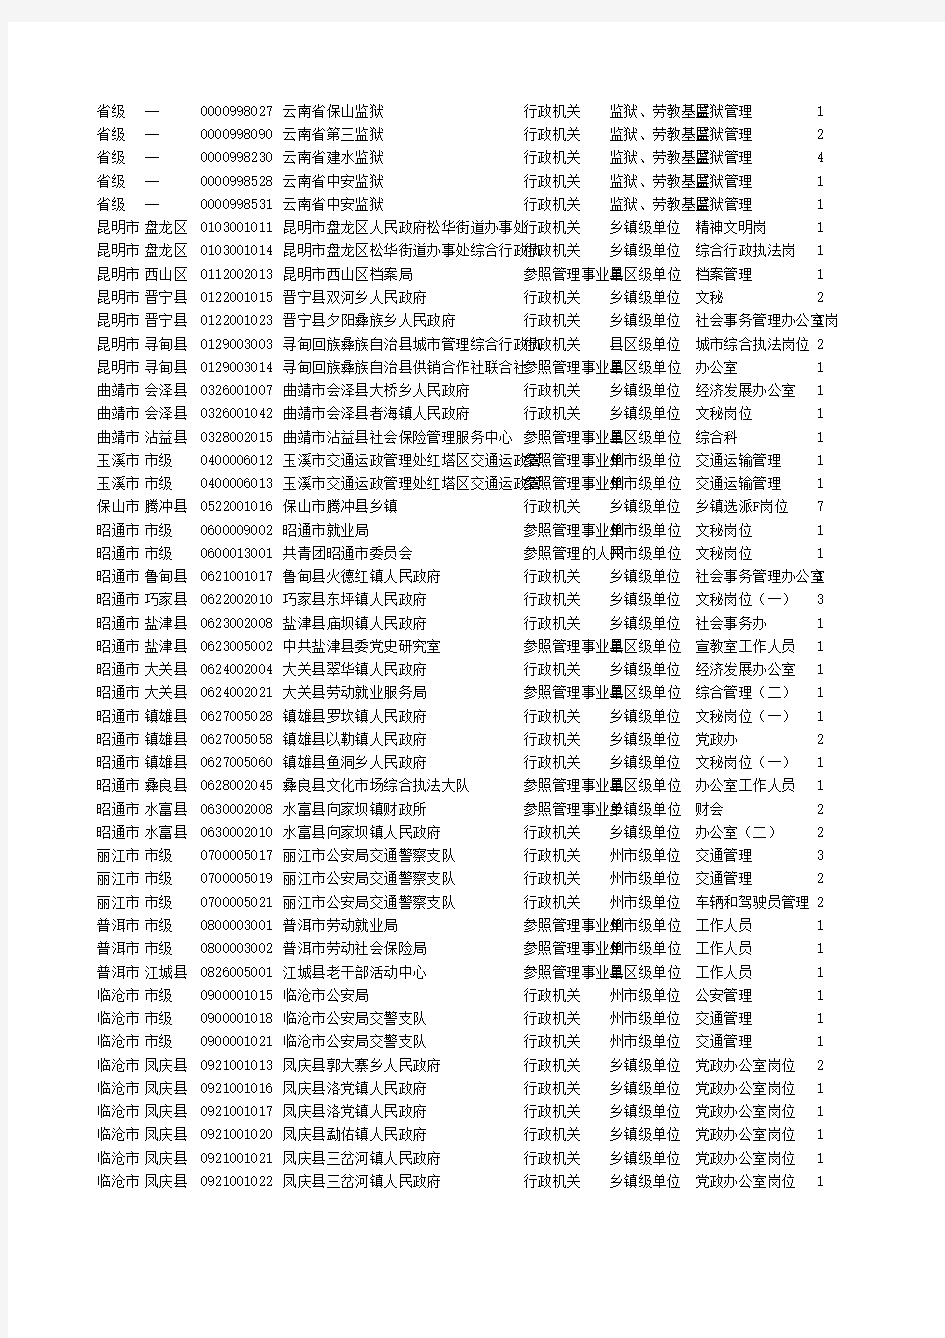 2013年云南省公务员考试职位表【非法检】